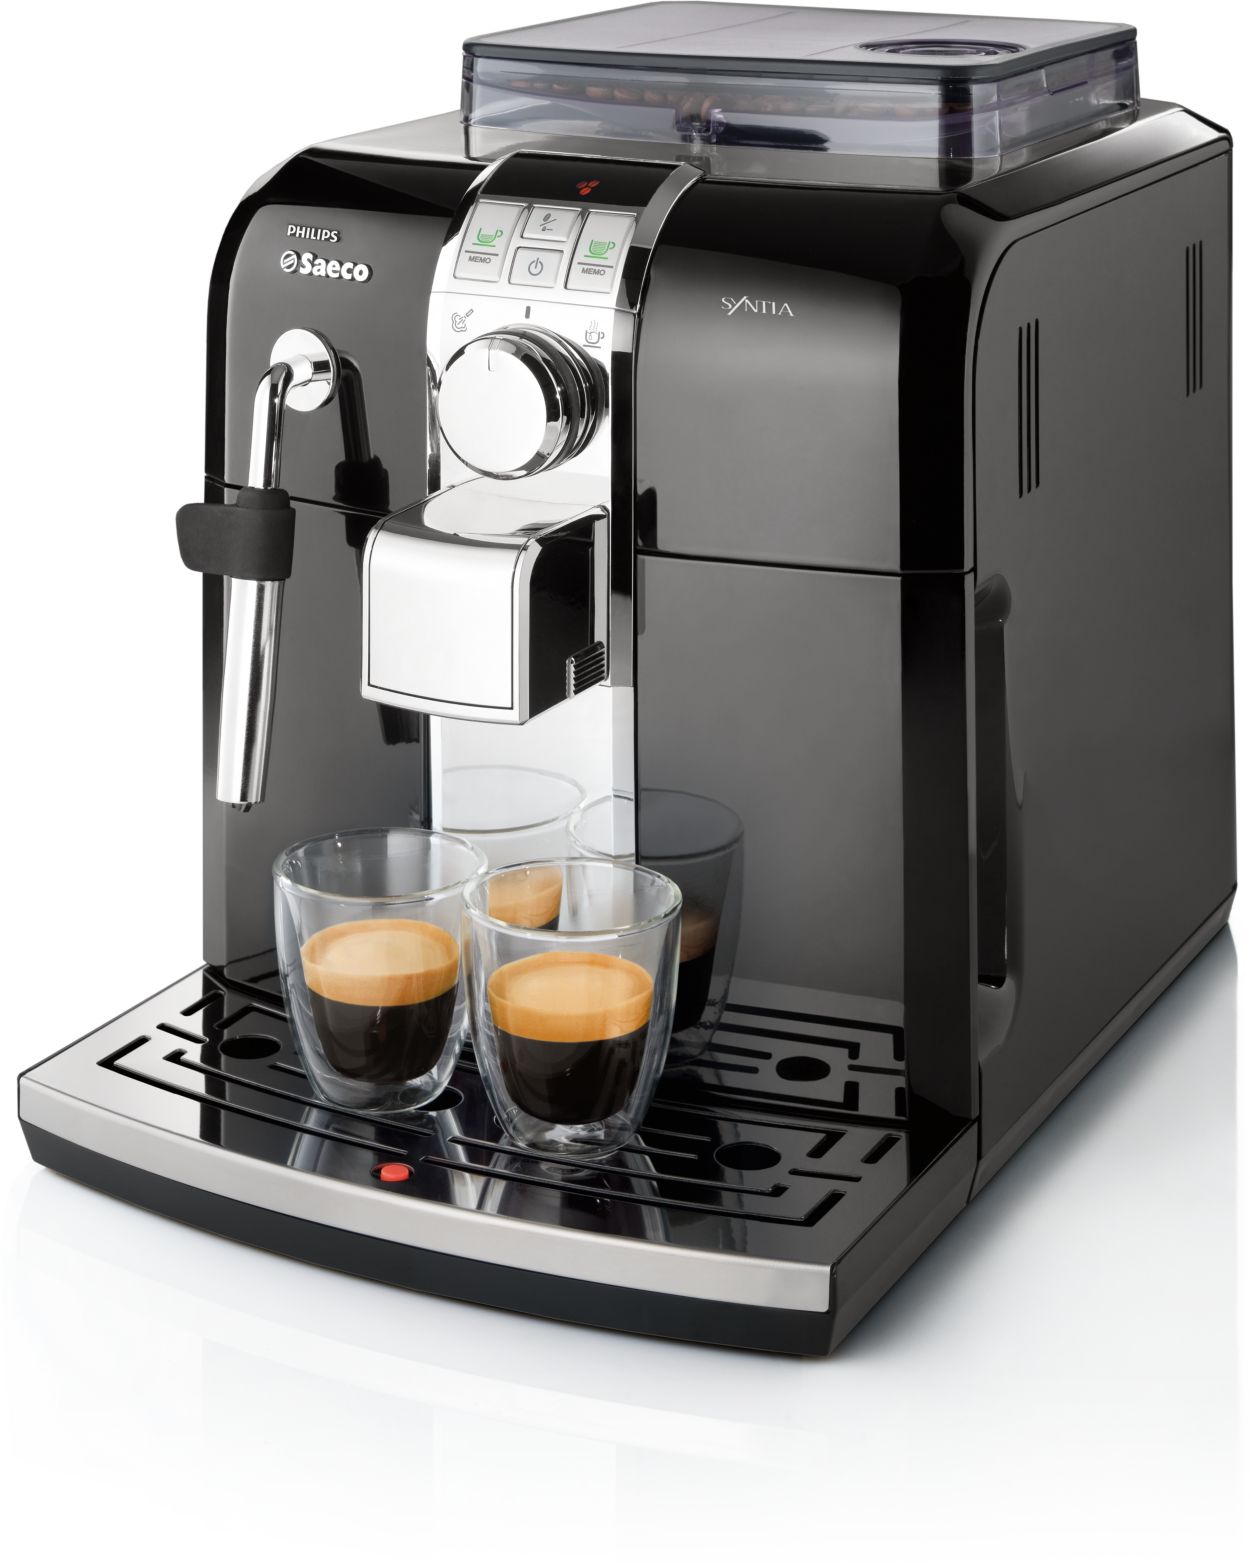 Philips Saeco Syntia Automatic Espresso Machine